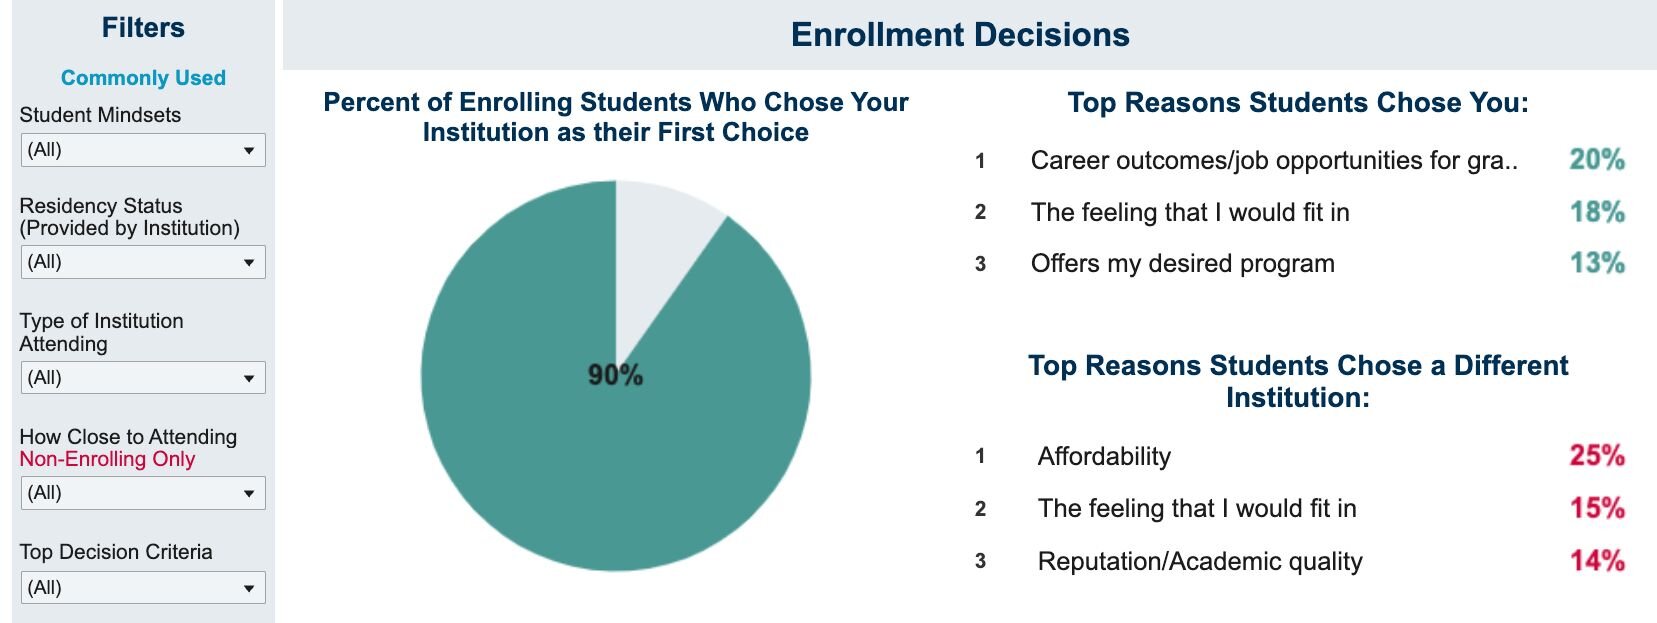 Enrollment Decisions